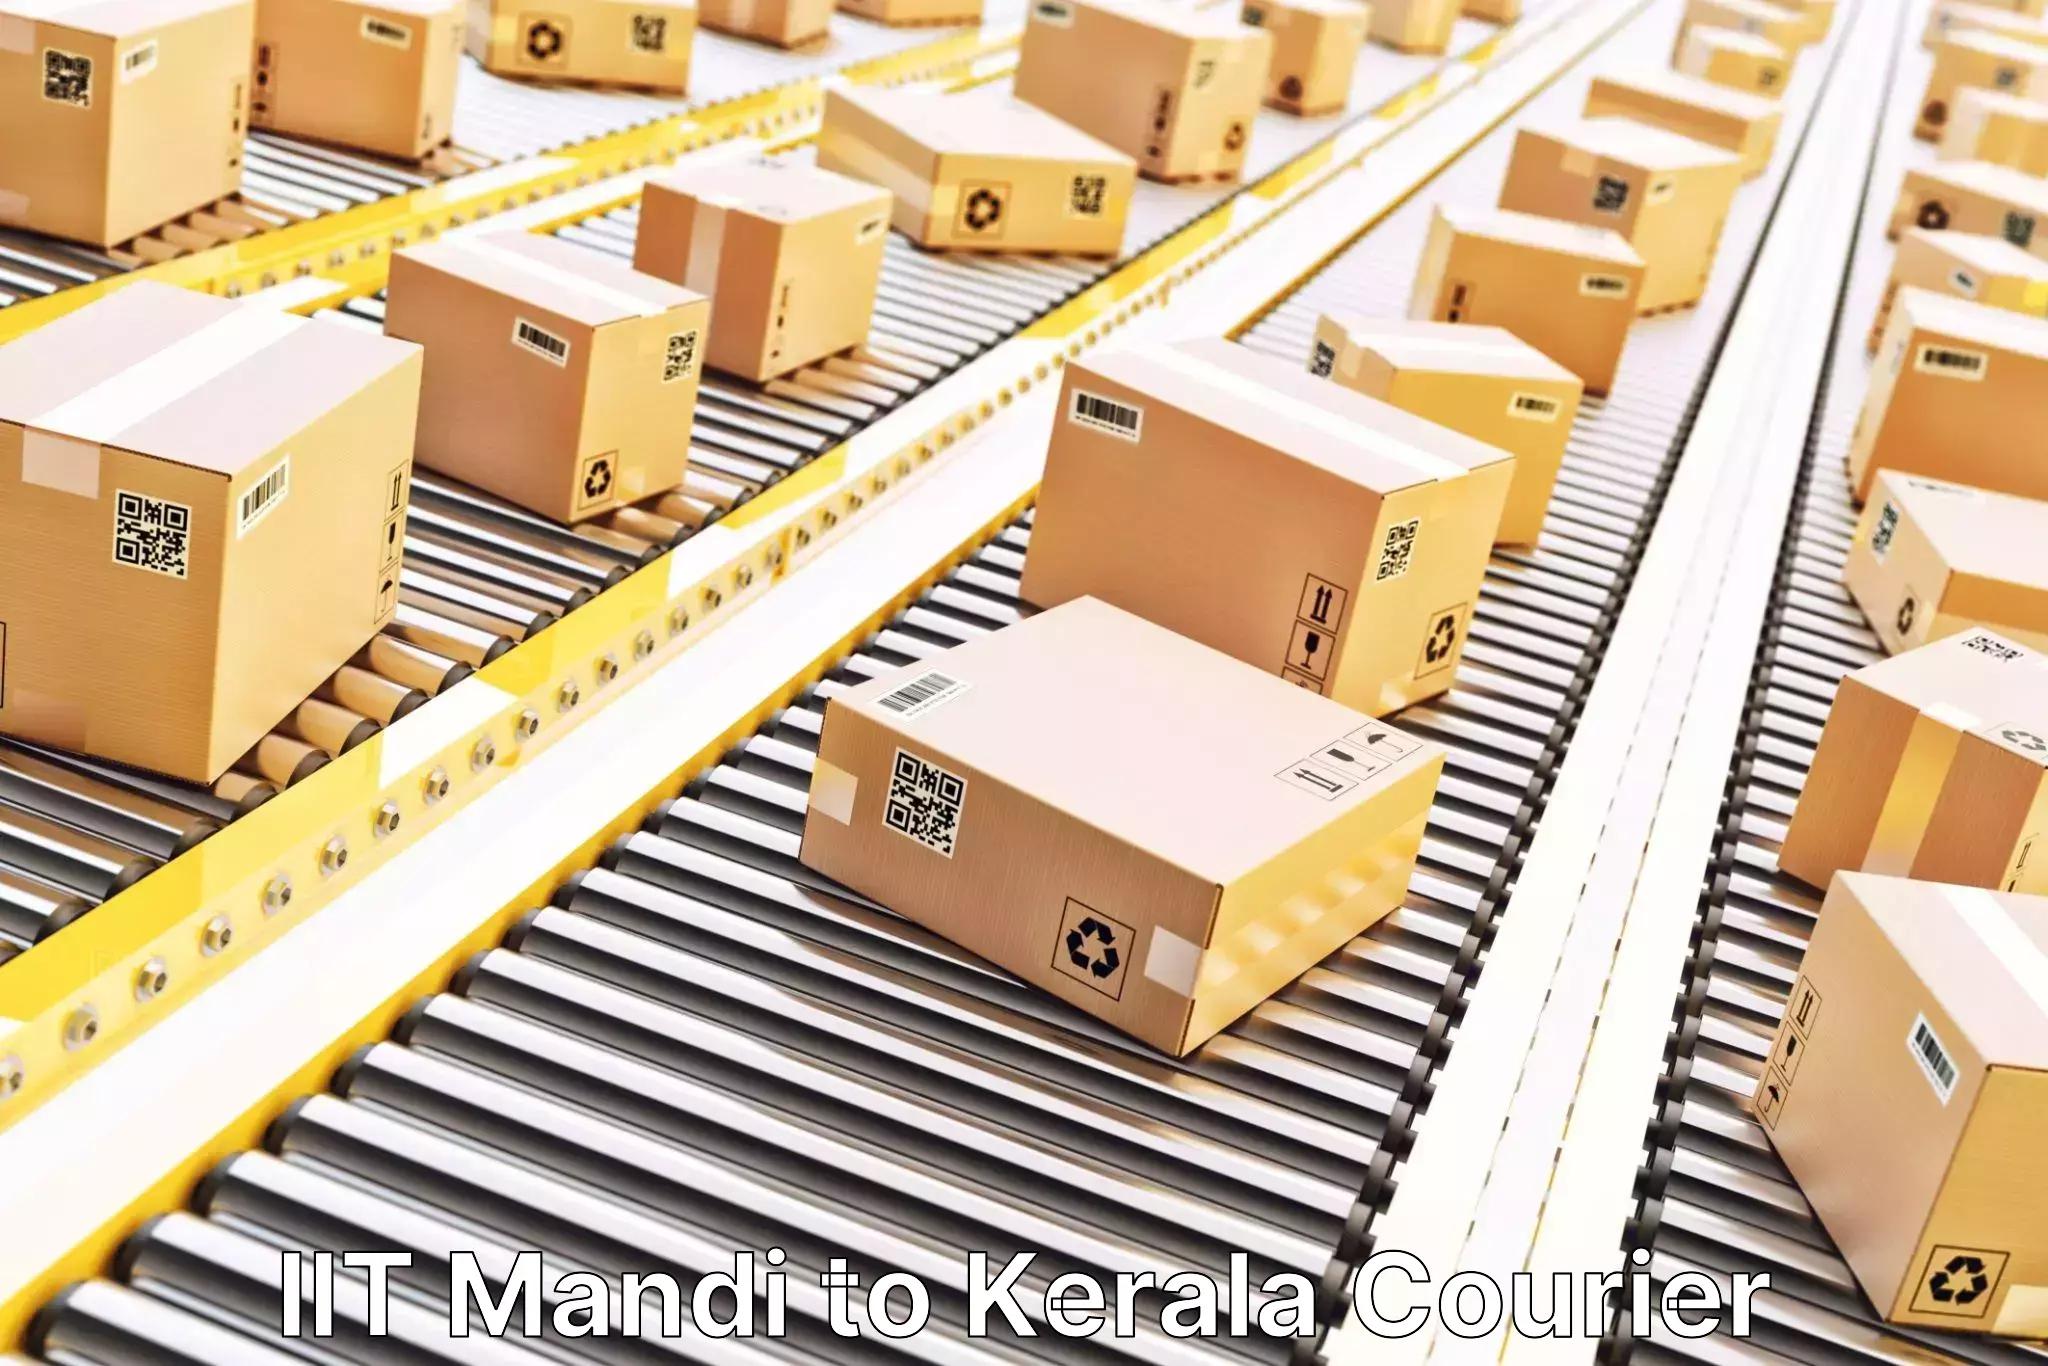 Logistics efficiency in IIT Mandi to Kalluvathukkal